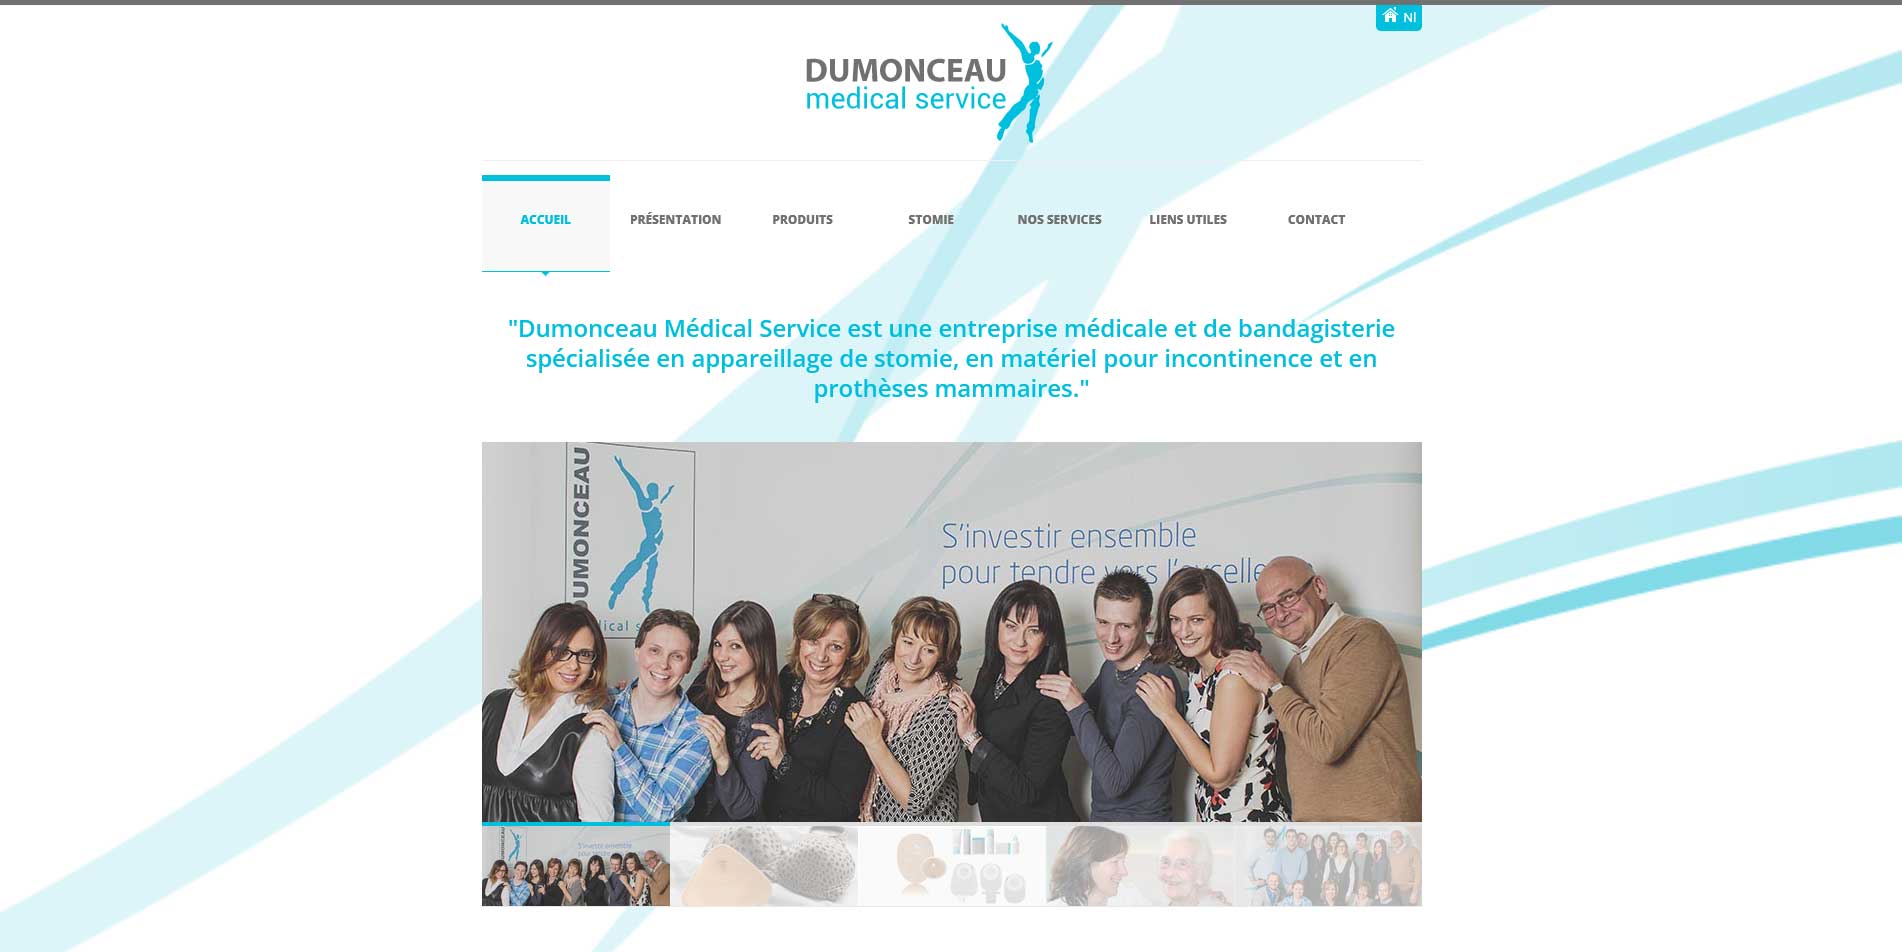 Image du site Dumonceau Mdical Services